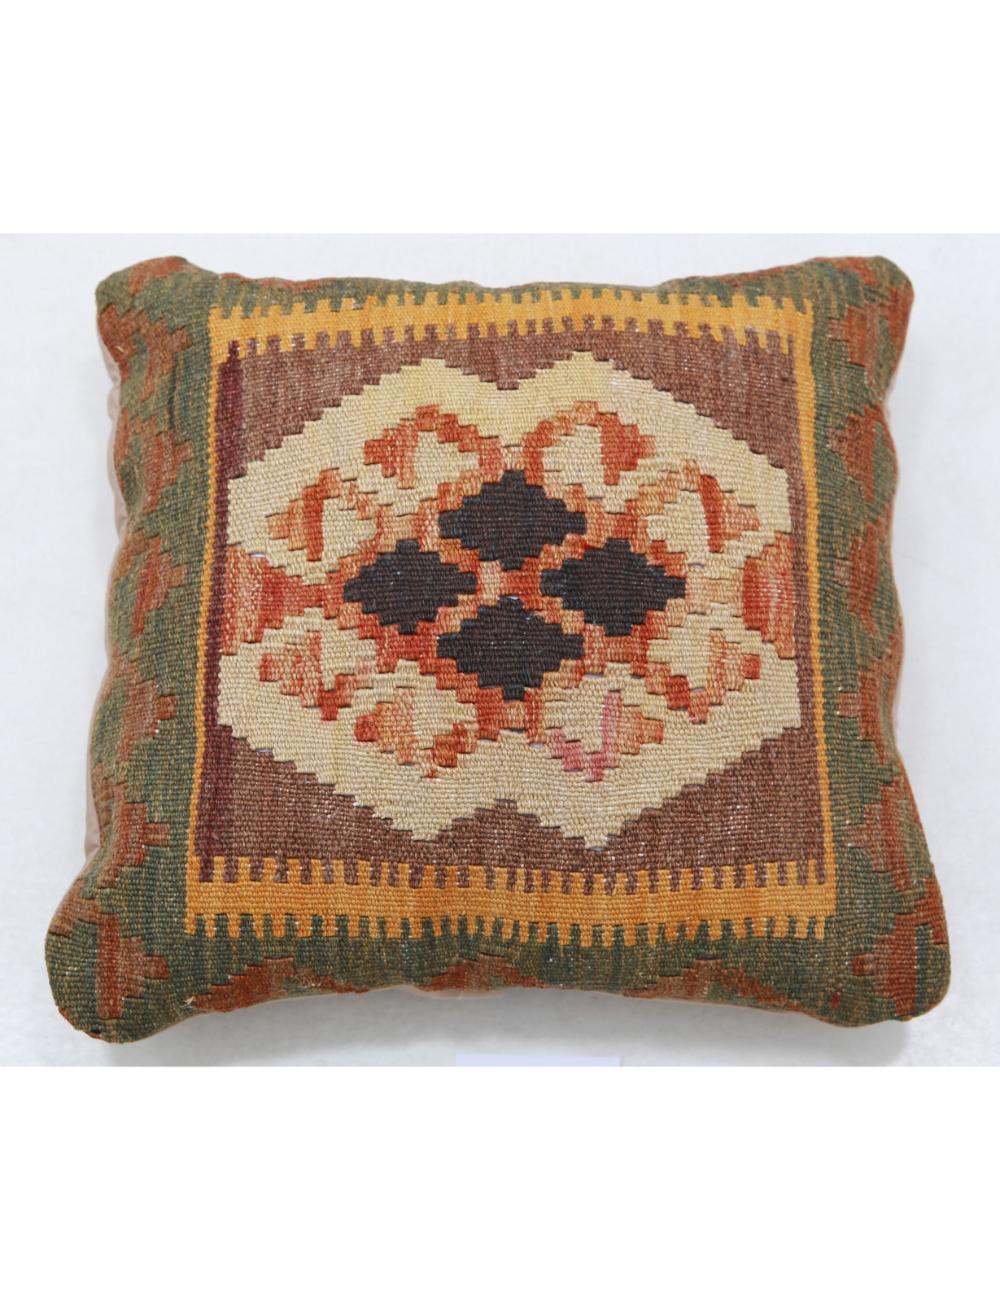 Hand Woven Tribal Multi Color Geometric Wool Pillow - 1'0'' x 1'0'' Arteverk Arteverk Rugs